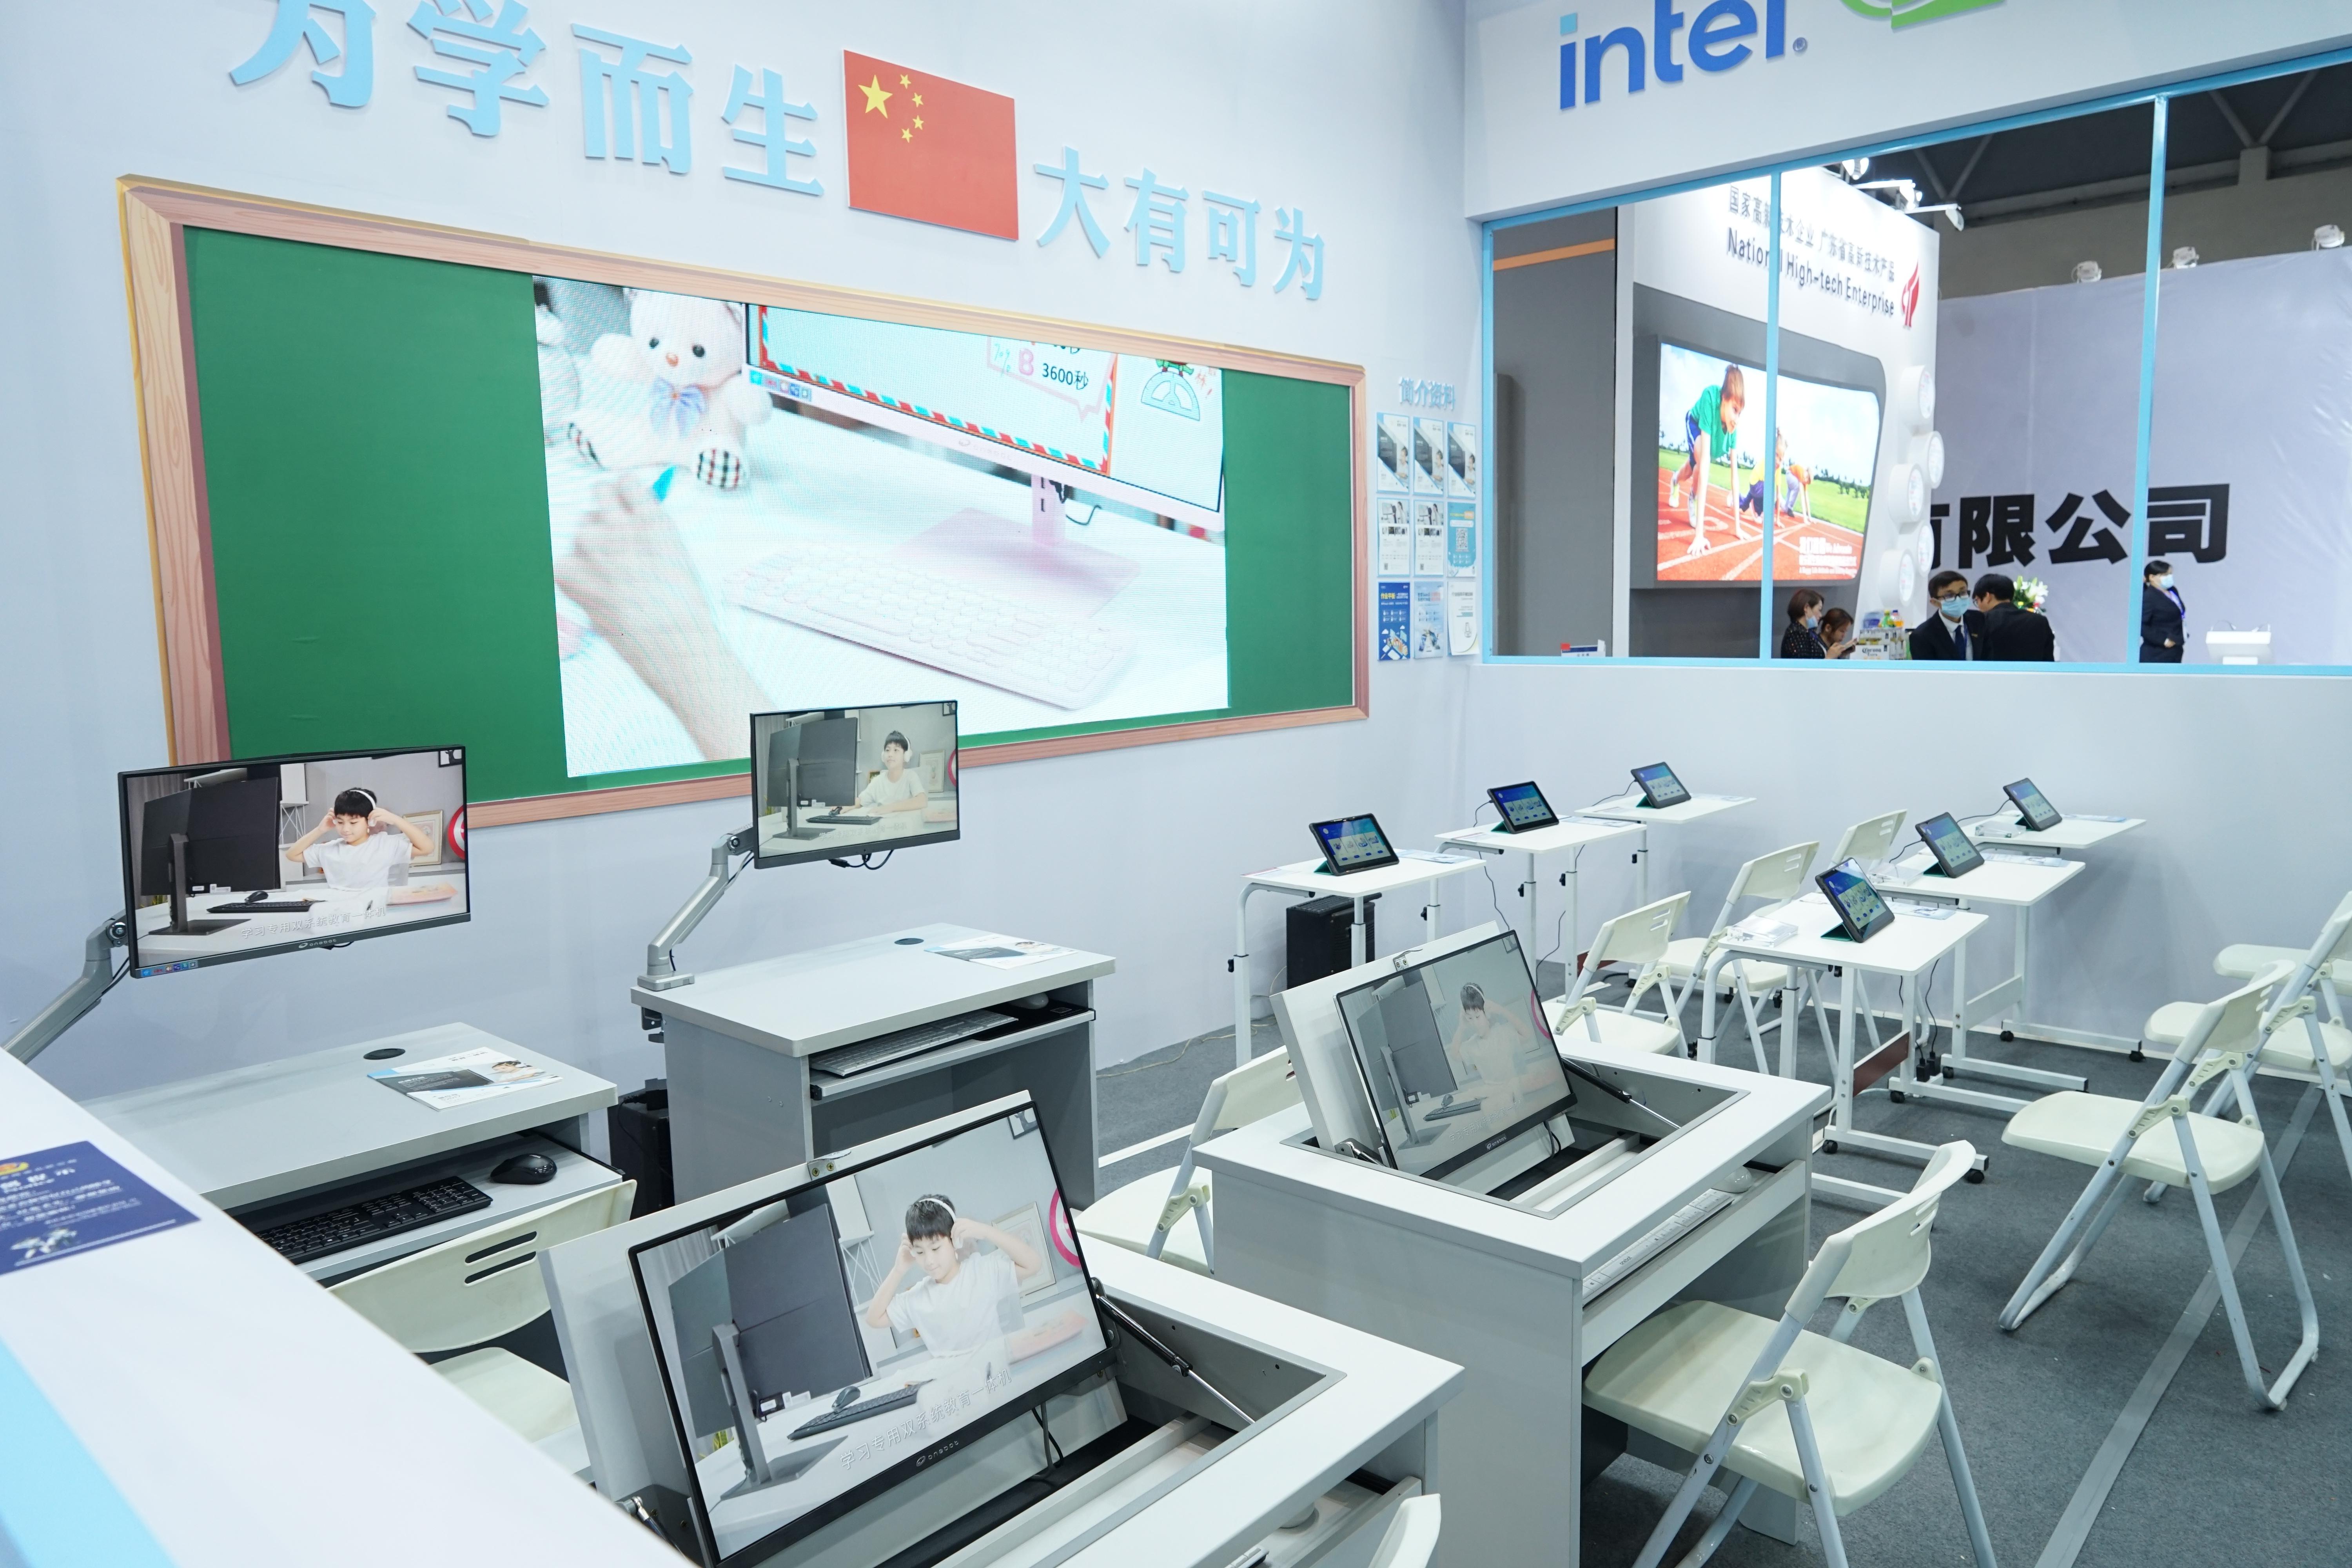 onebot一体机亮相78届中国教育装备展